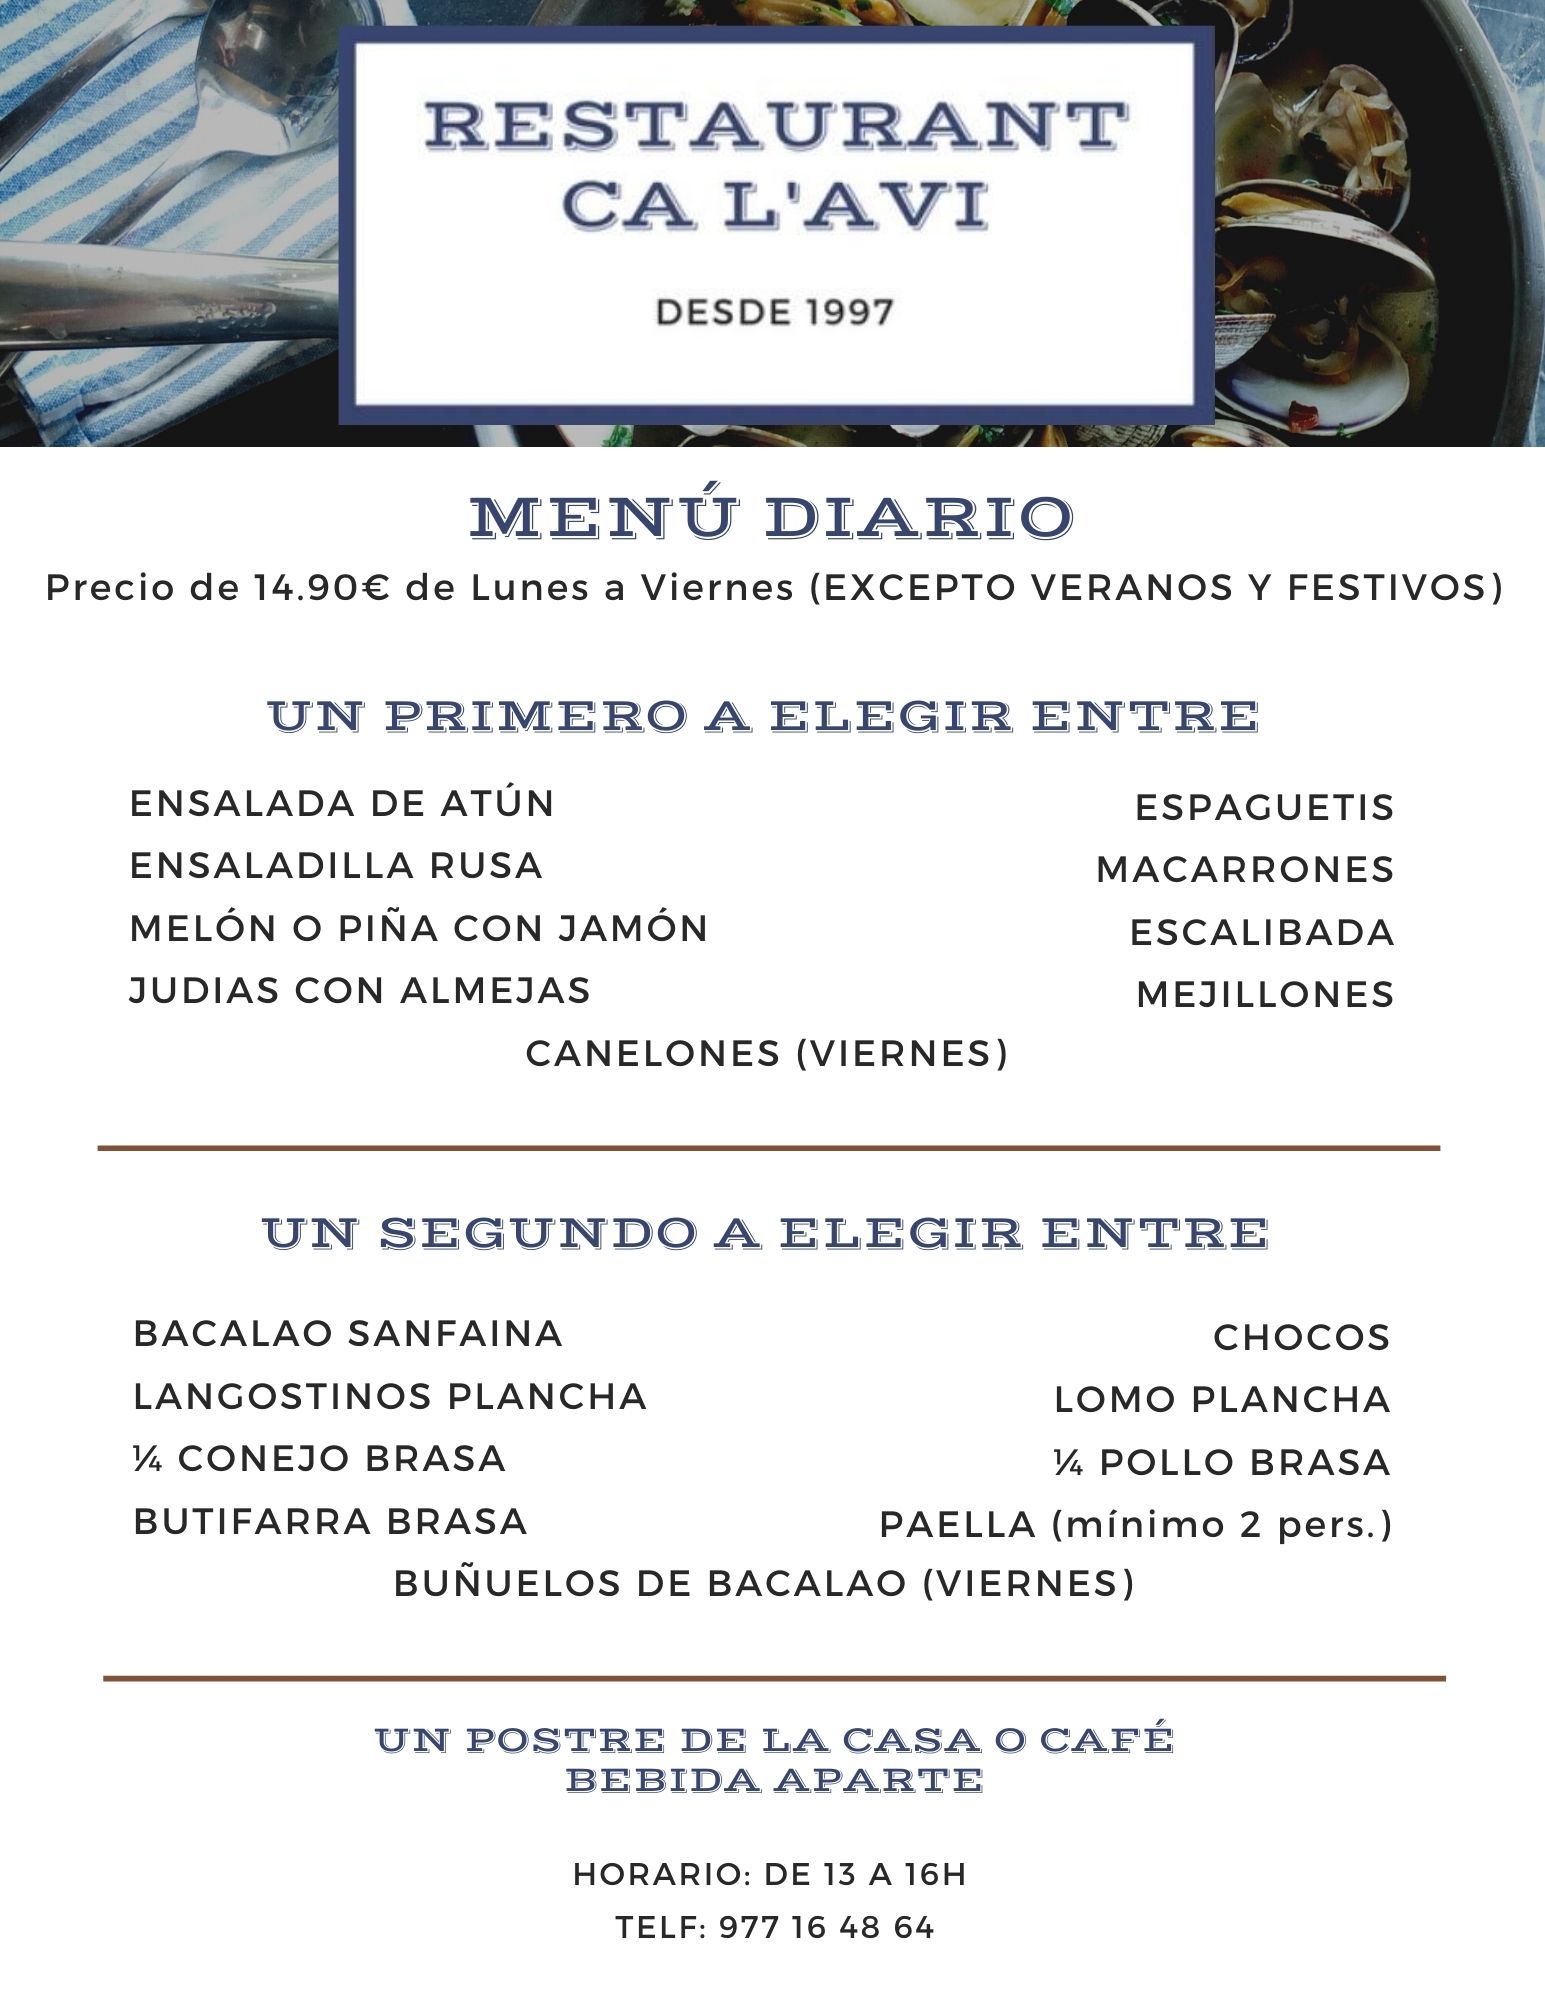 Menu Diario Restaurant Ca l'Avi